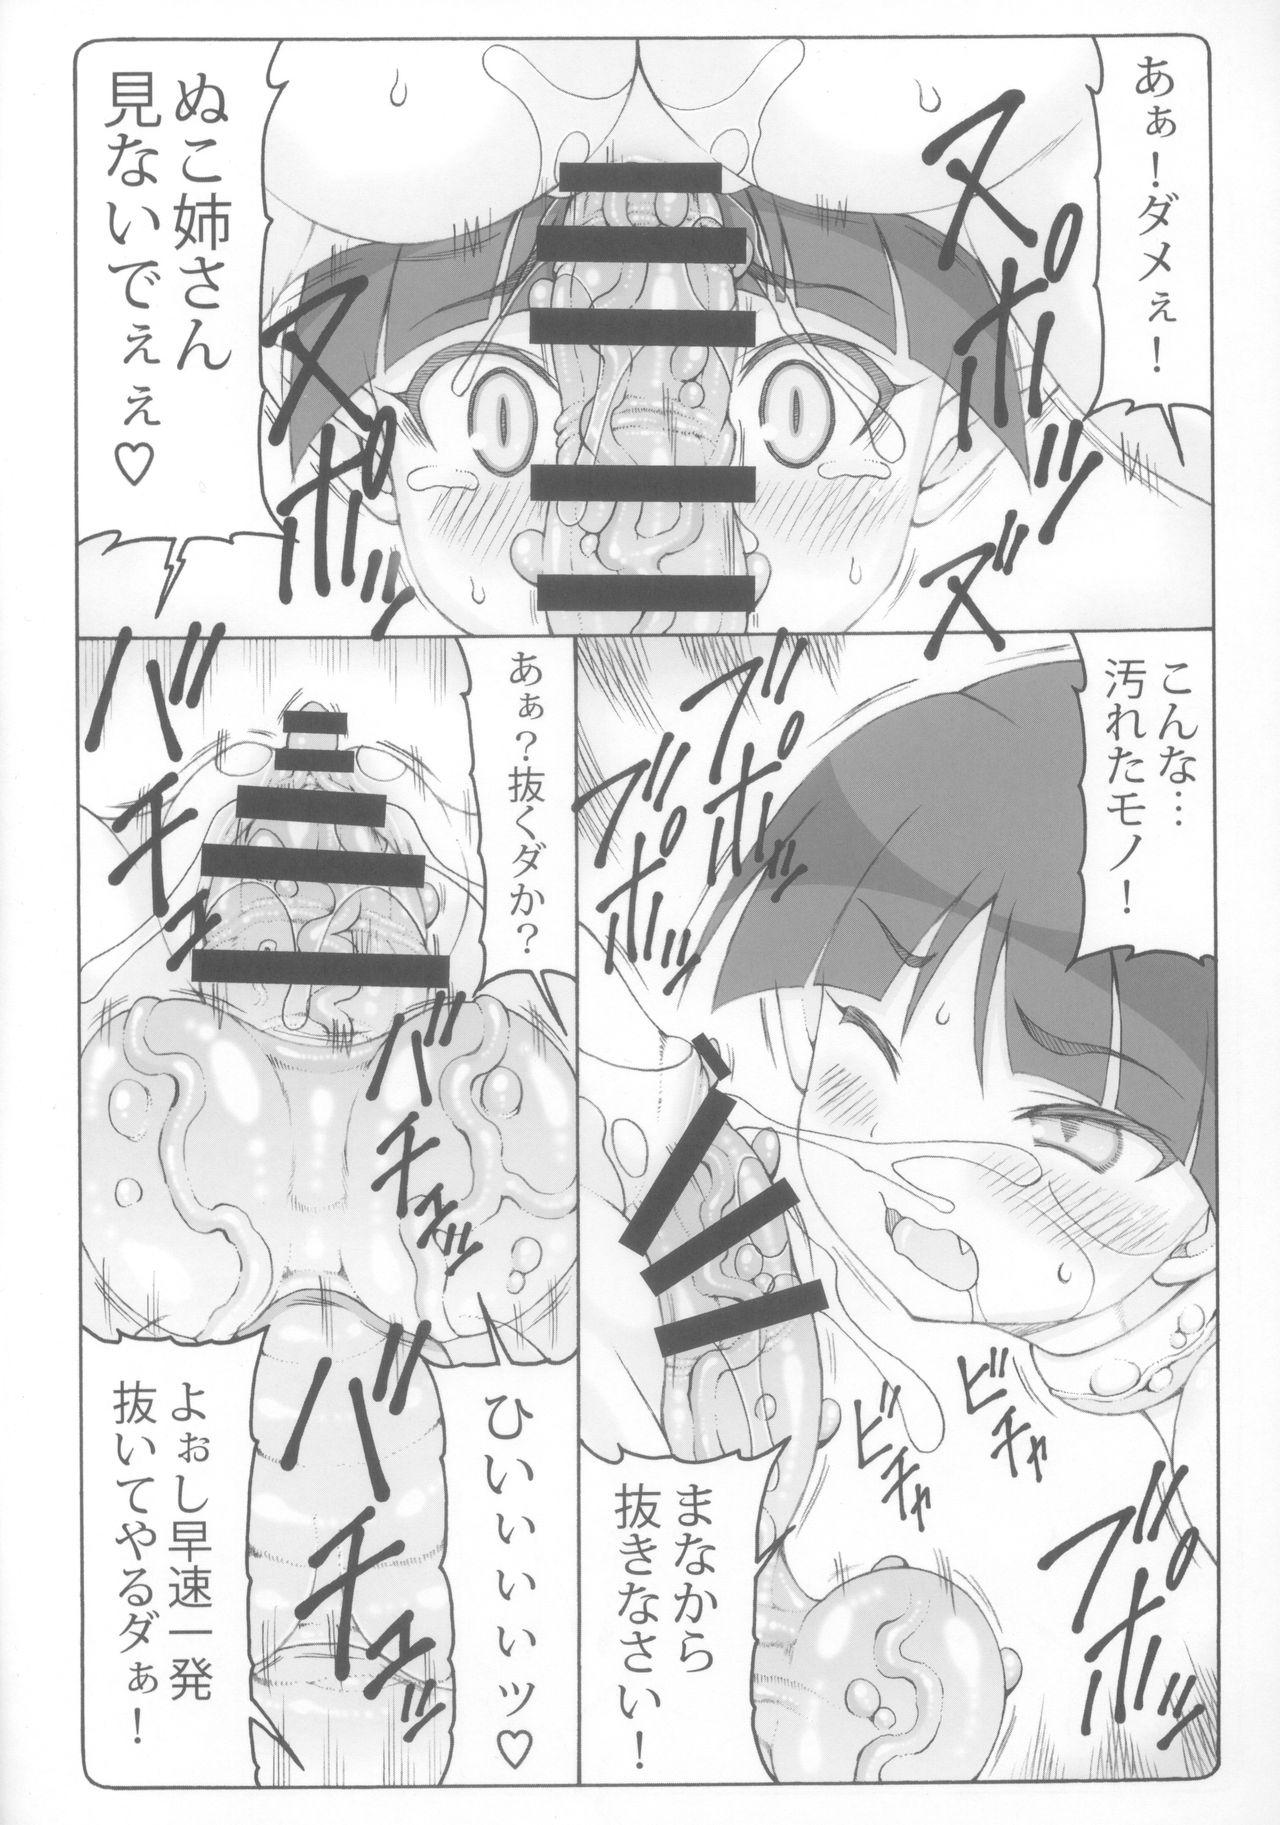 Pov Sex Nuko Musume vs Youkai Shirikabe 2 - Gegege no kitarou Jocks - Page 12